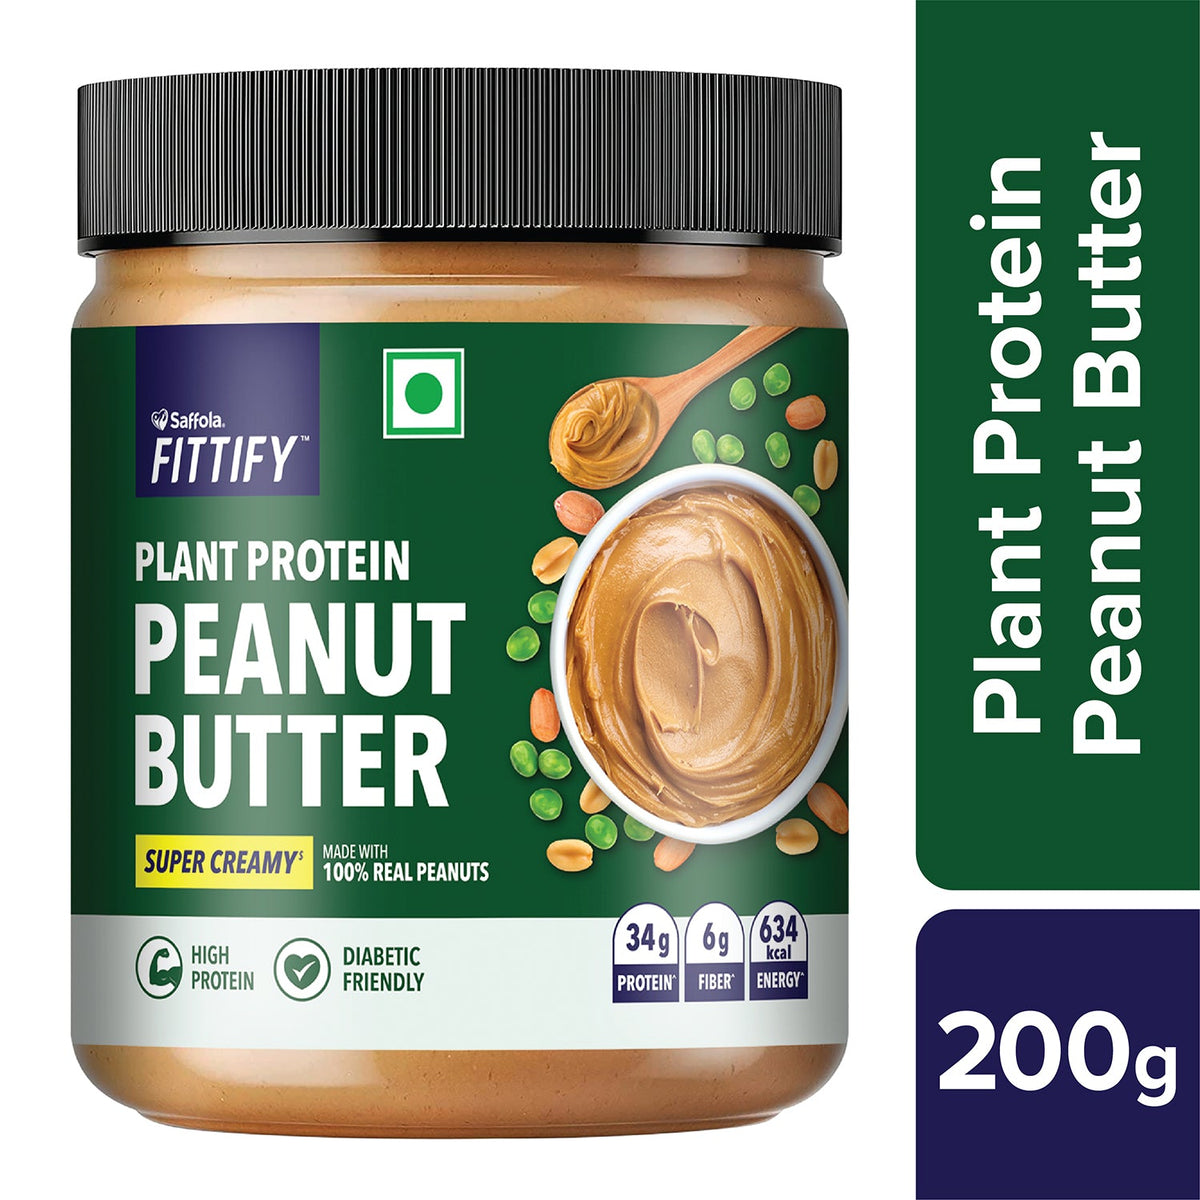 [SALE] Saffola Fittify Plant Protein Peanut Butter Super Creamy 200g